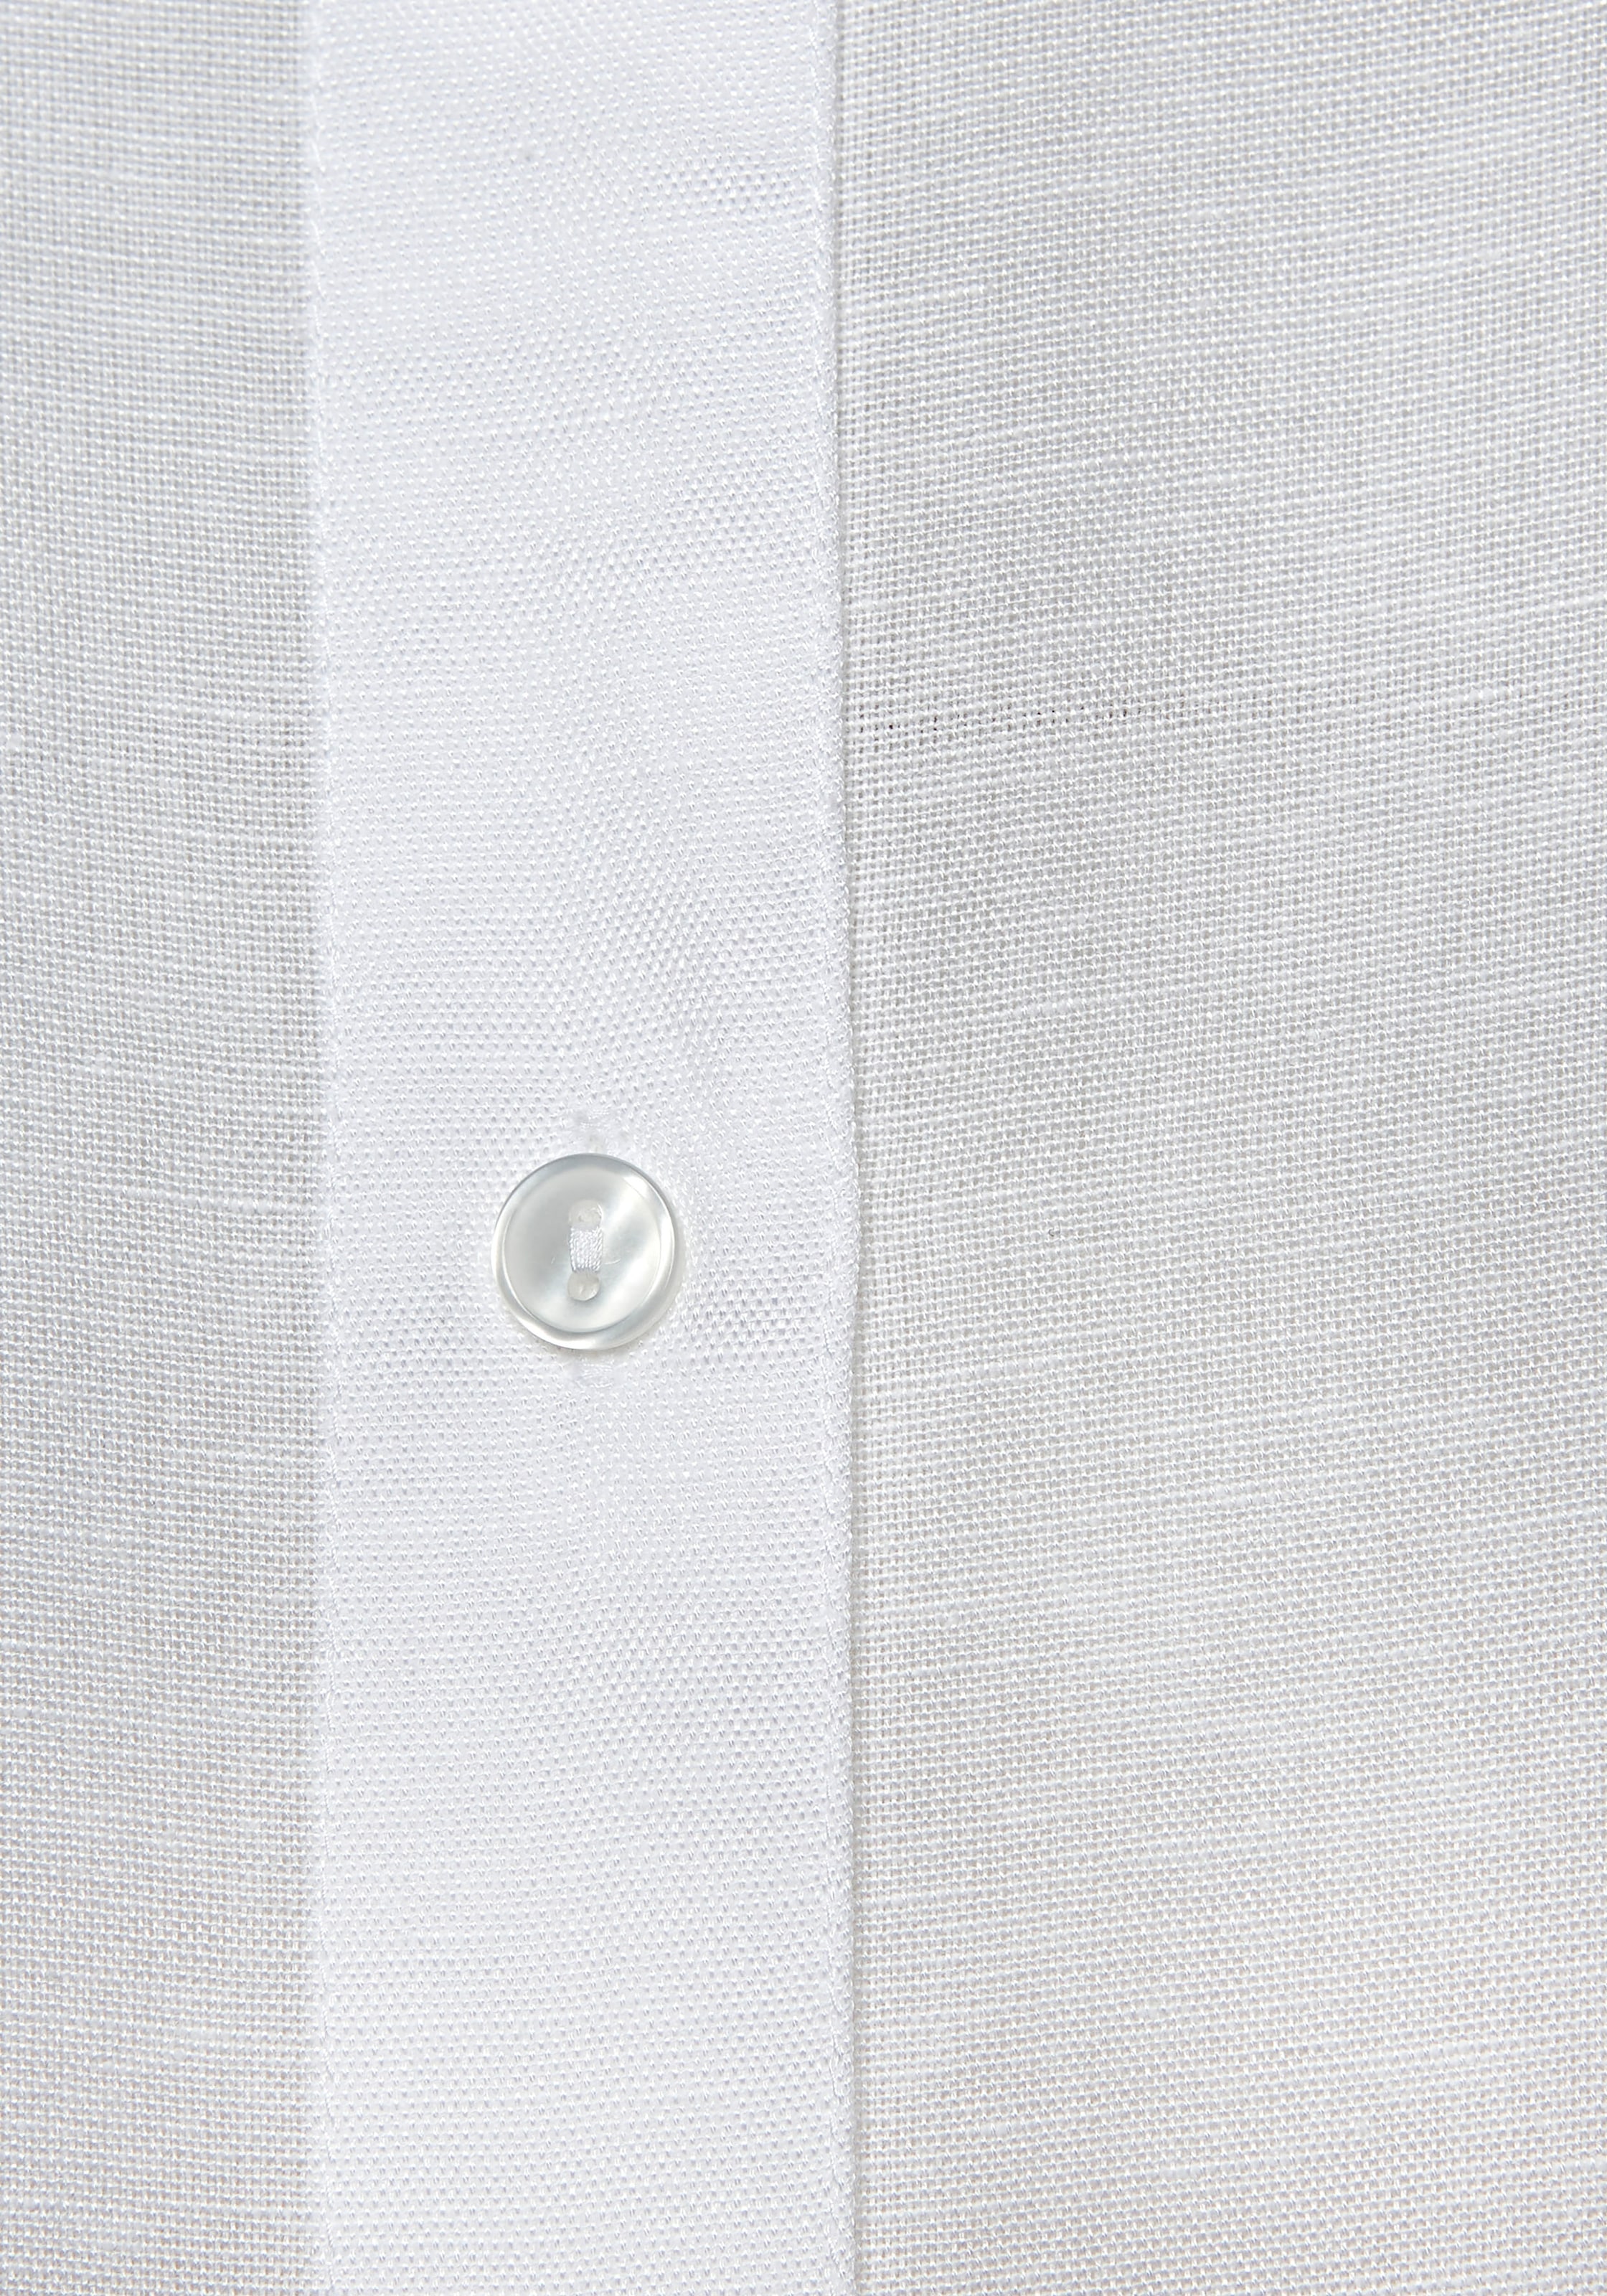 LASCANA Longbluse, aus leichter Webware mit Leinenanteil, luftiges Blusenkleid